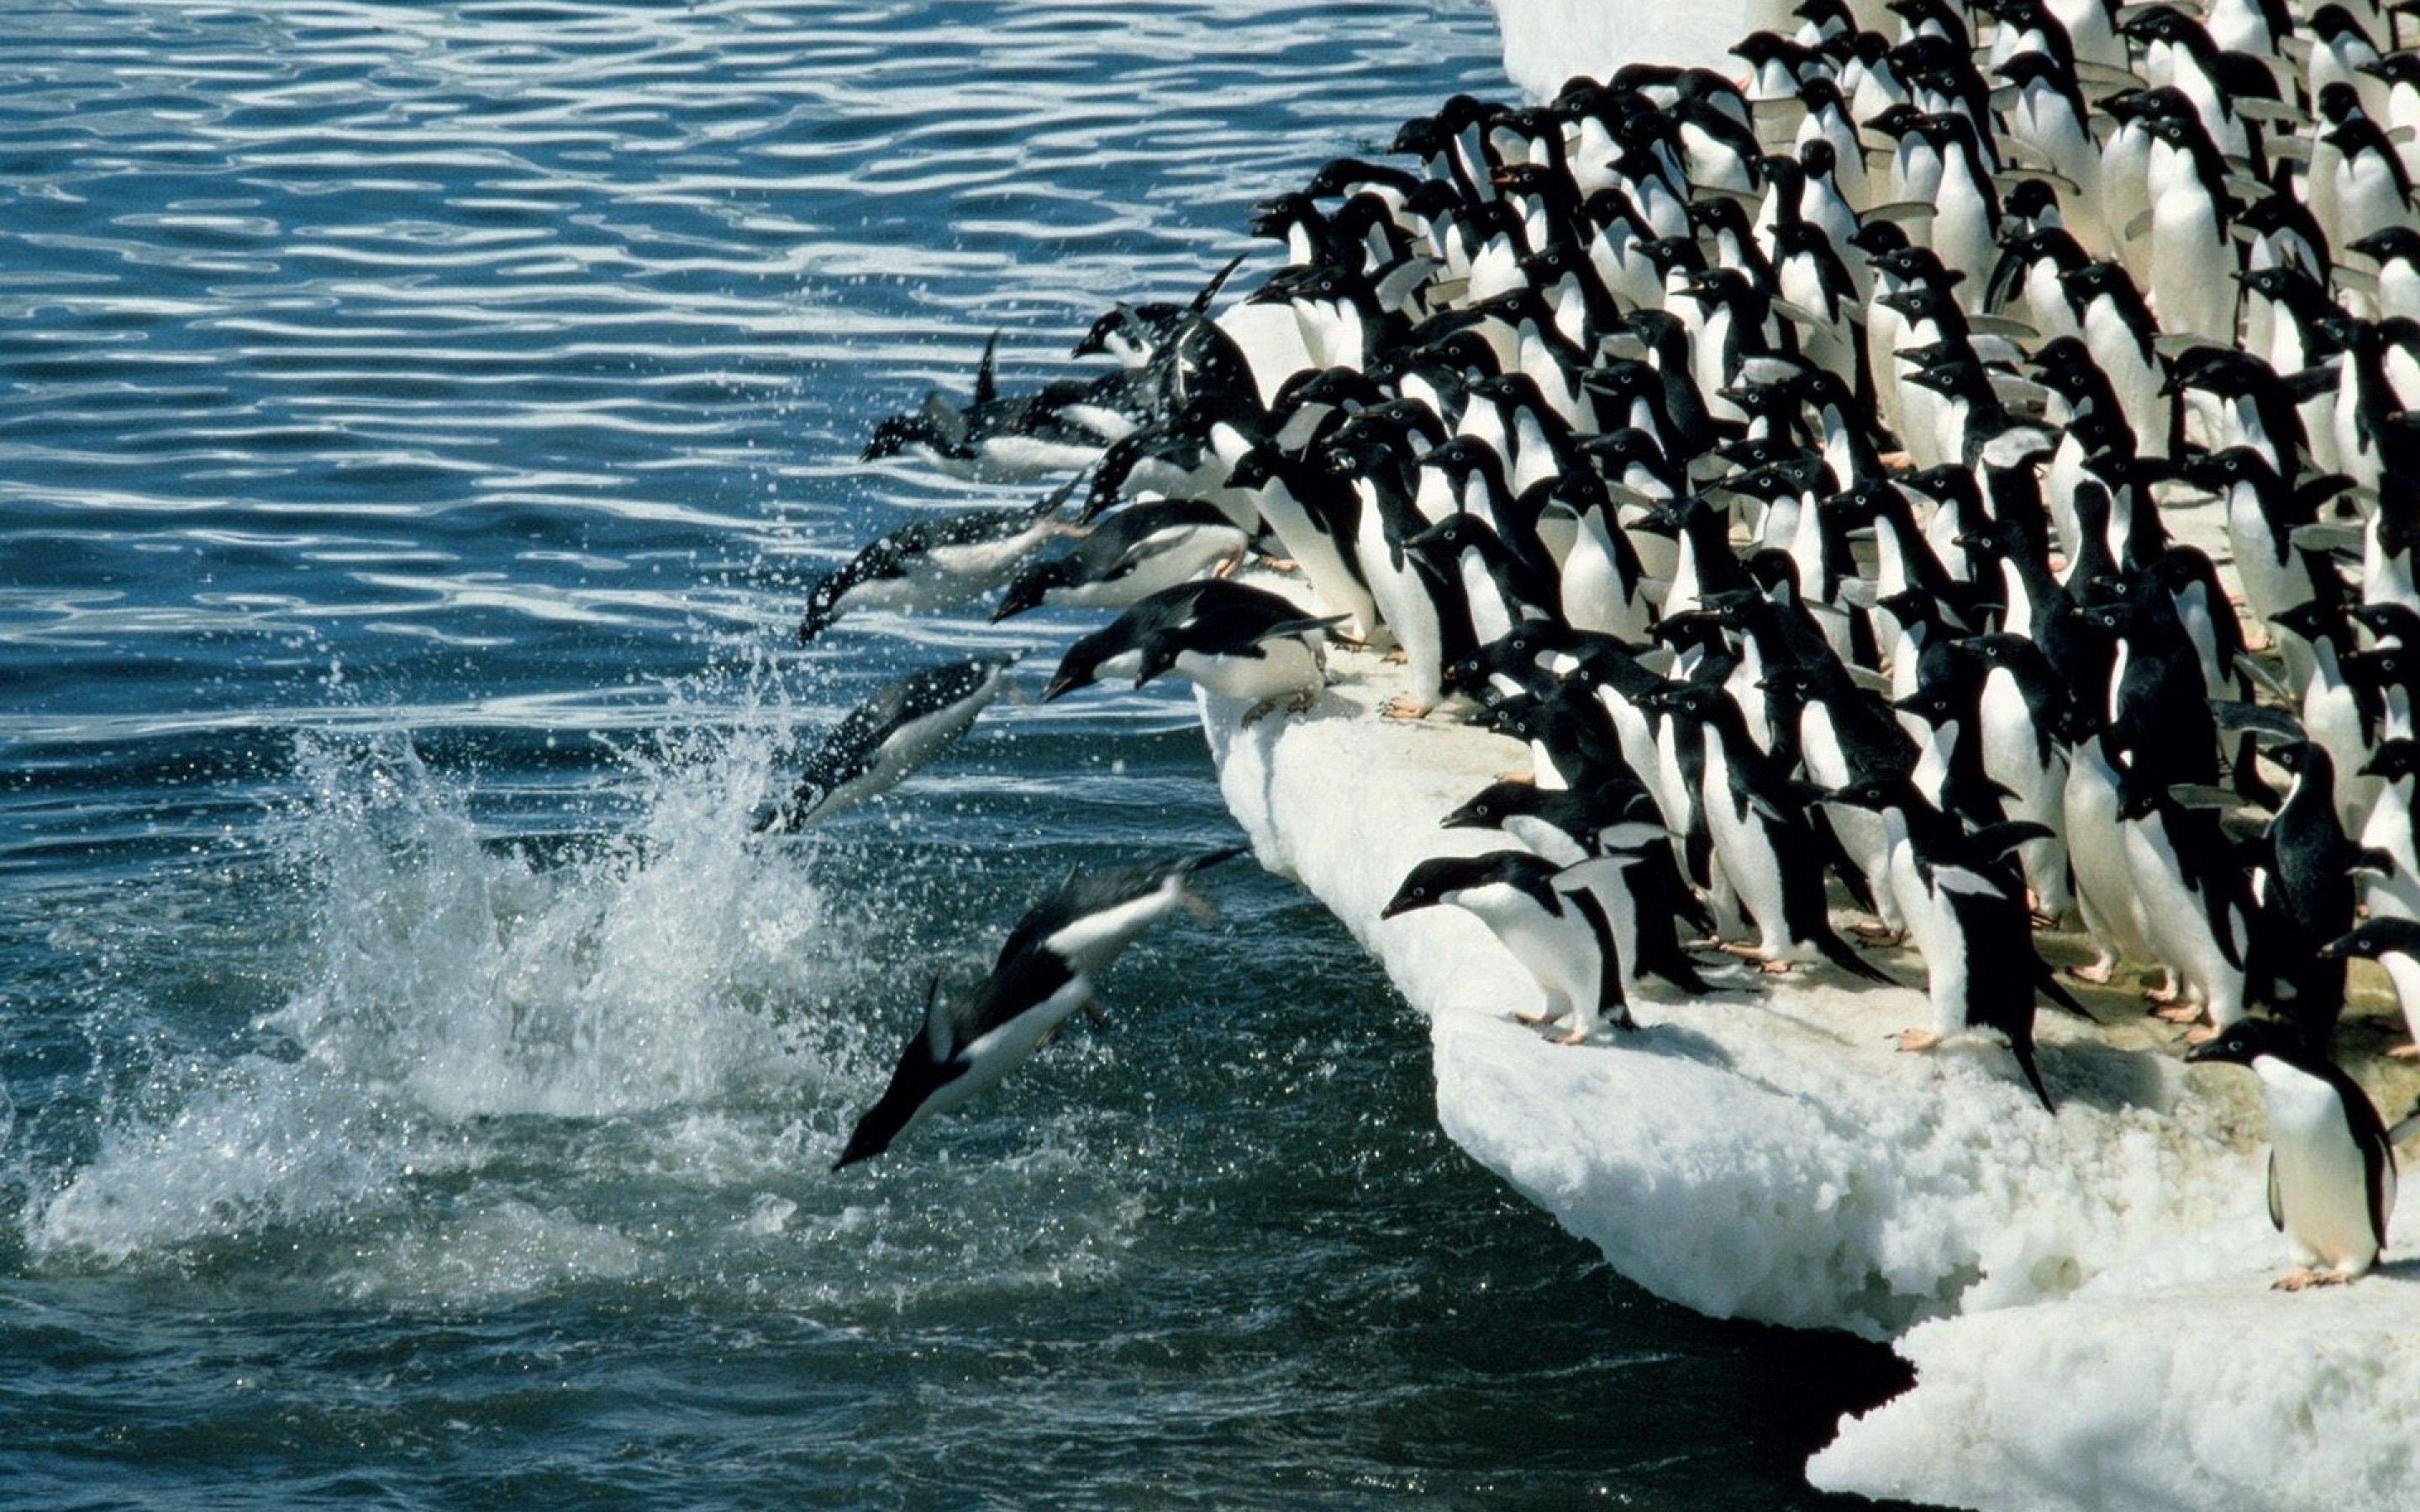 Императорский пингвин чемпион по нырянию среди пингвинов. Императорский Пингвин ныряет. Миграция пингвинов в Антарктиде. Стая пингвинов. Пингвин ныряет в воду.